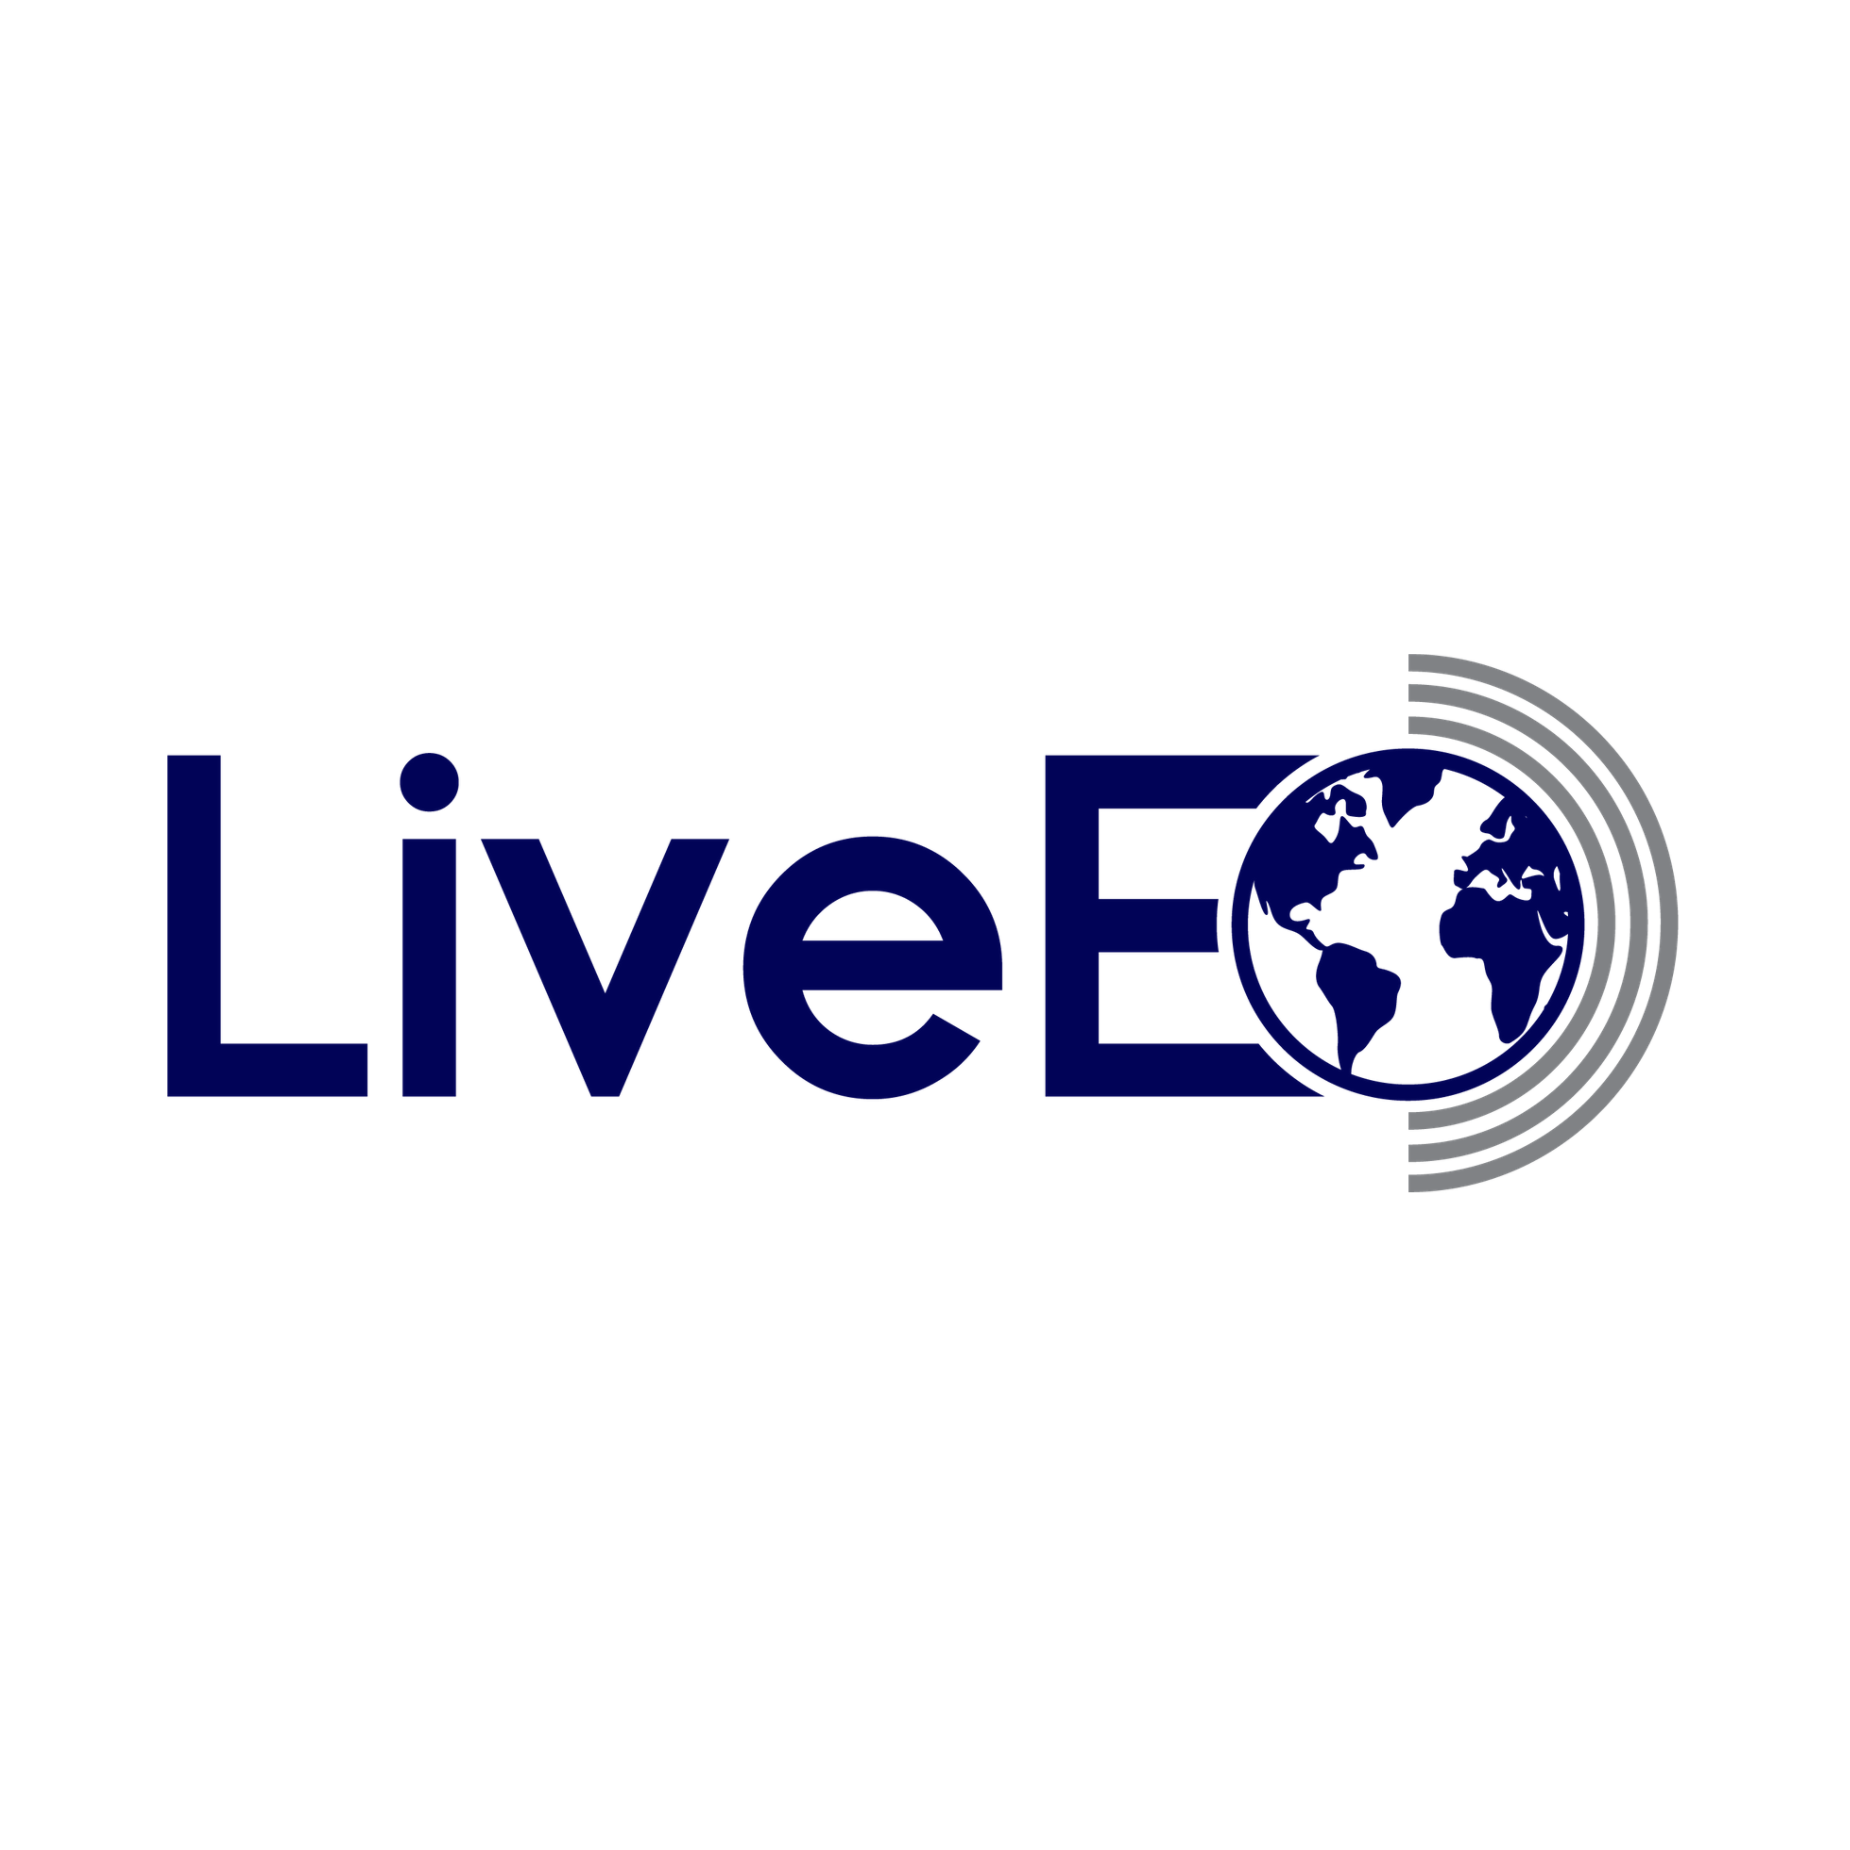 LiveEO Wins Deutsche Bahn’s Supplier Innovation Award 2021